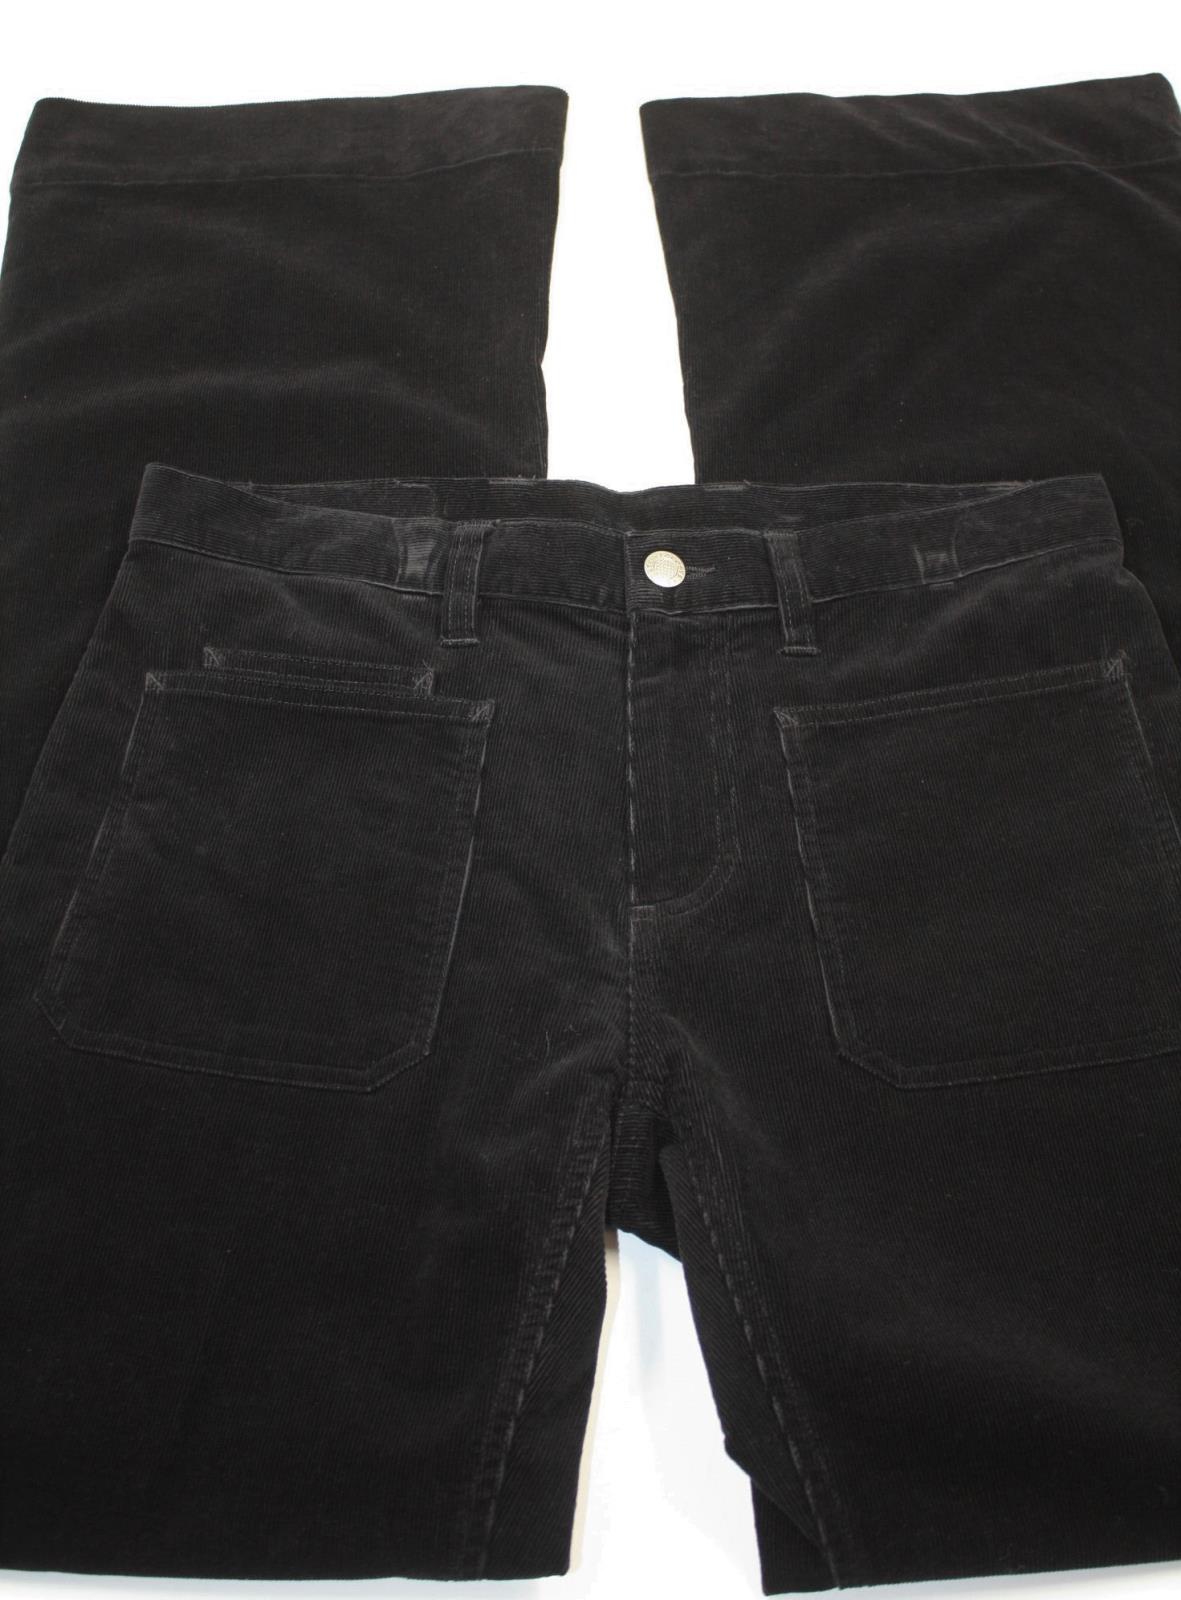 lacoste black jeans